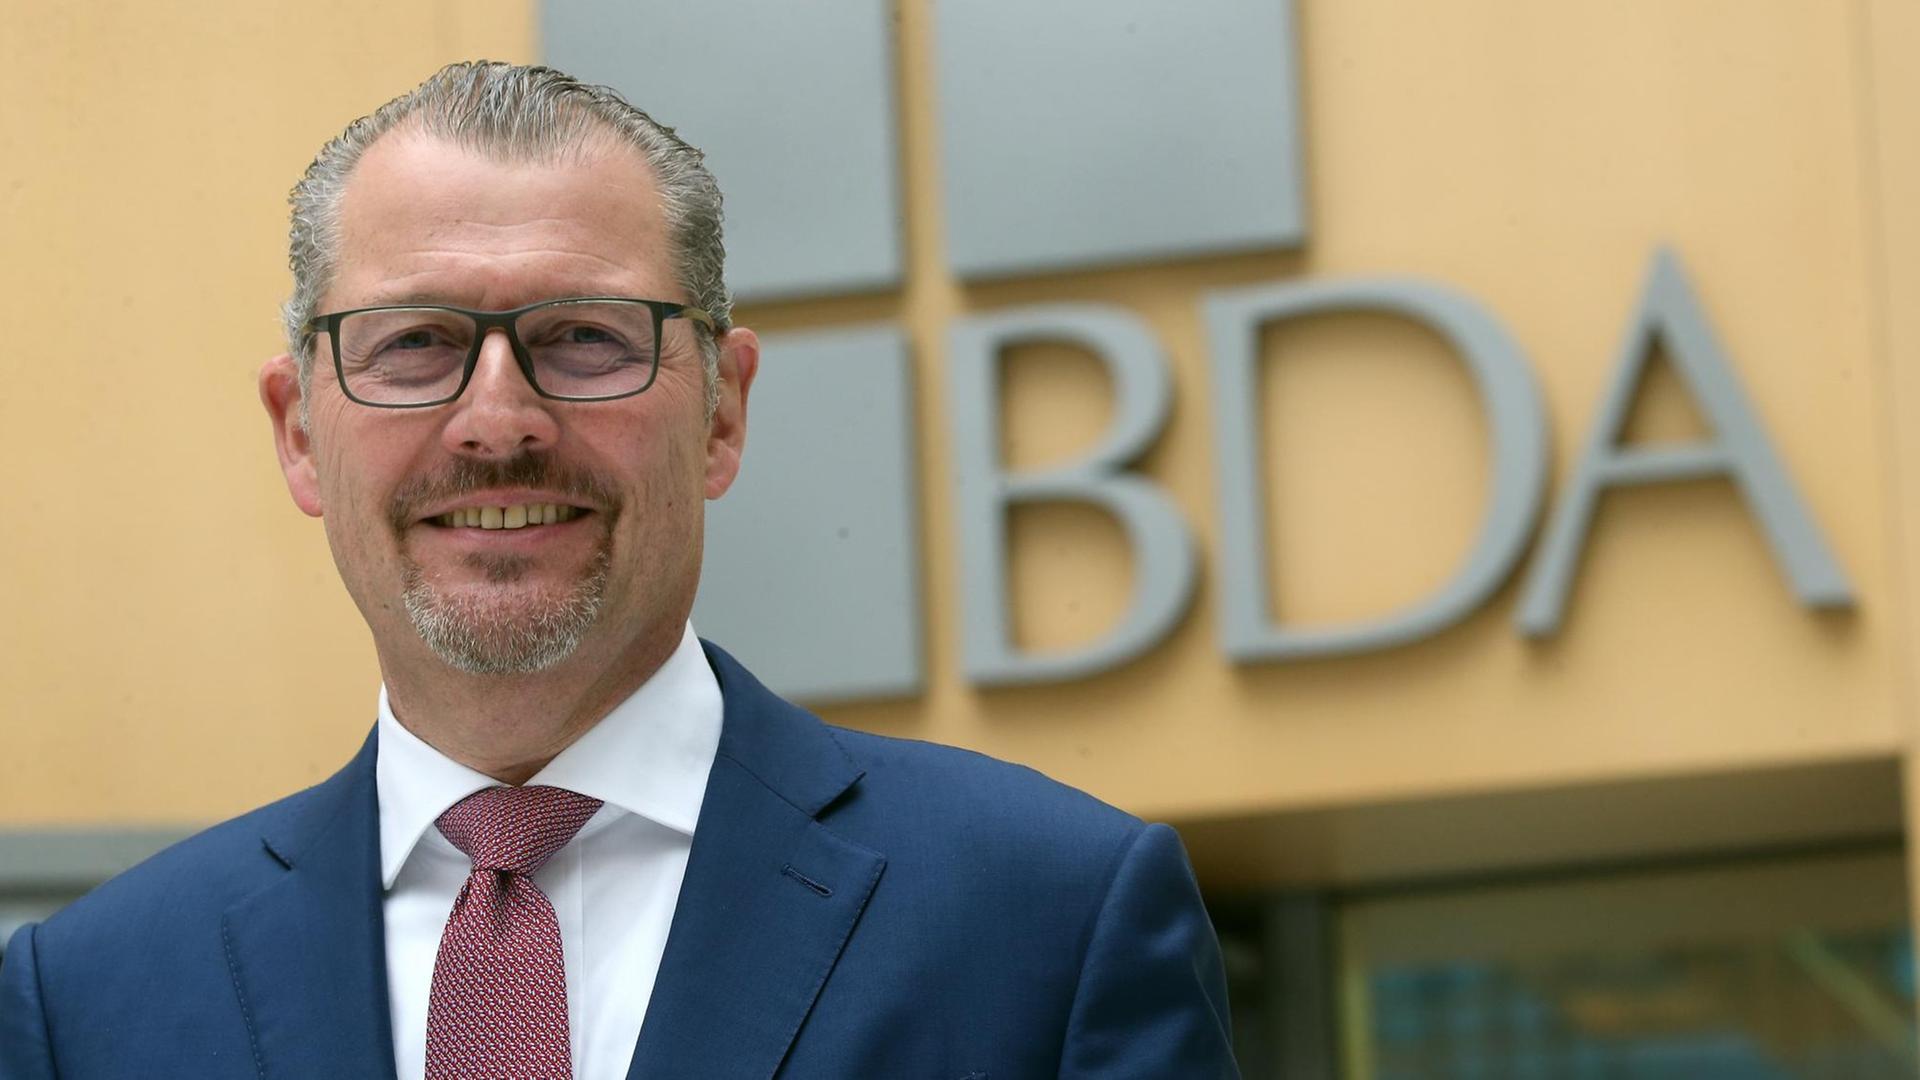 Rainer Dulger, Gesamtmetall-Präsident, steht nach seiner Wahl zum neuen Präsidenten der Bundesvereinigung der Deutschen Arbeitgeberverbände (BDA) im Atrium seines neuen Dienstsitzes